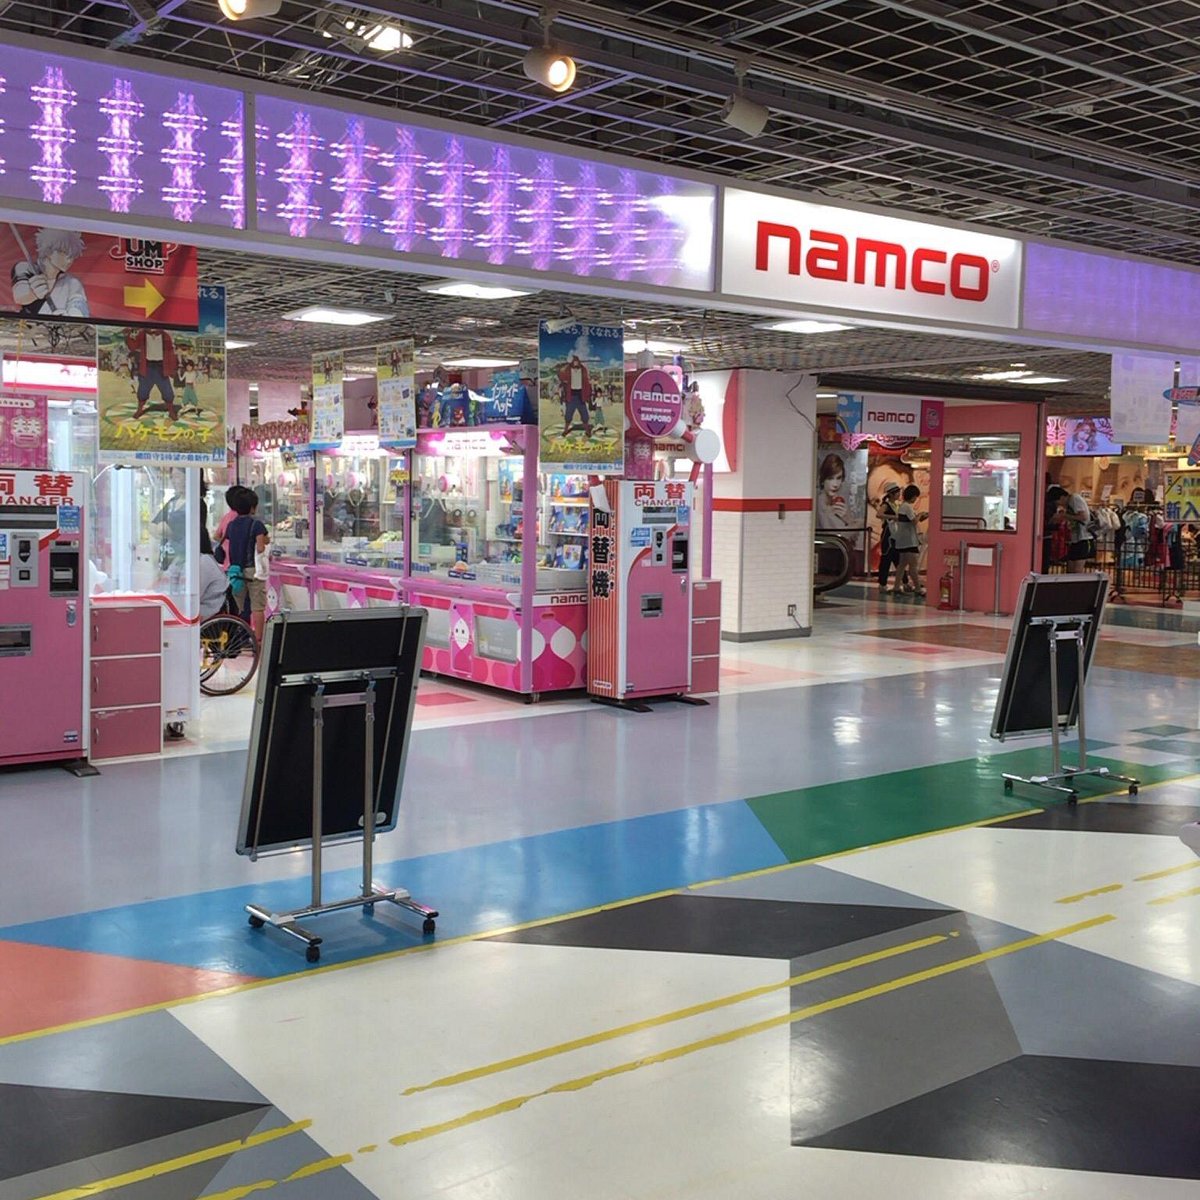 22年 Namco札幌エスタ店 行く前に 見どころをチェック トリップアドバイザー